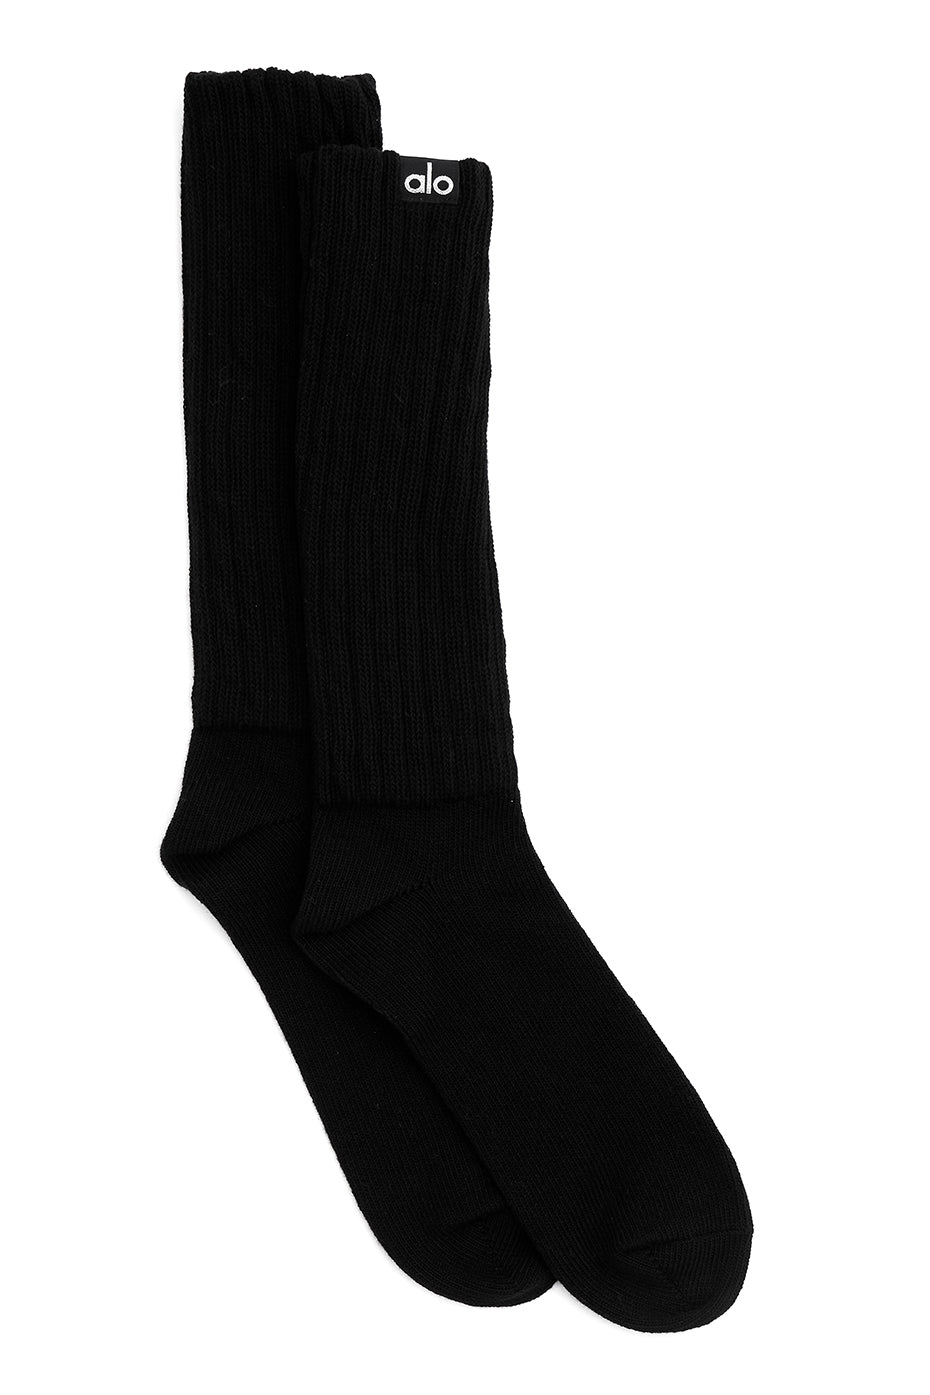 Ready Stock! ALO YOGA Women Socks [100% Original from Alo US] Happy  shopping 🛍️ 📩 Tokopedia/ Shopee : royalukstore 📩 WA: 08